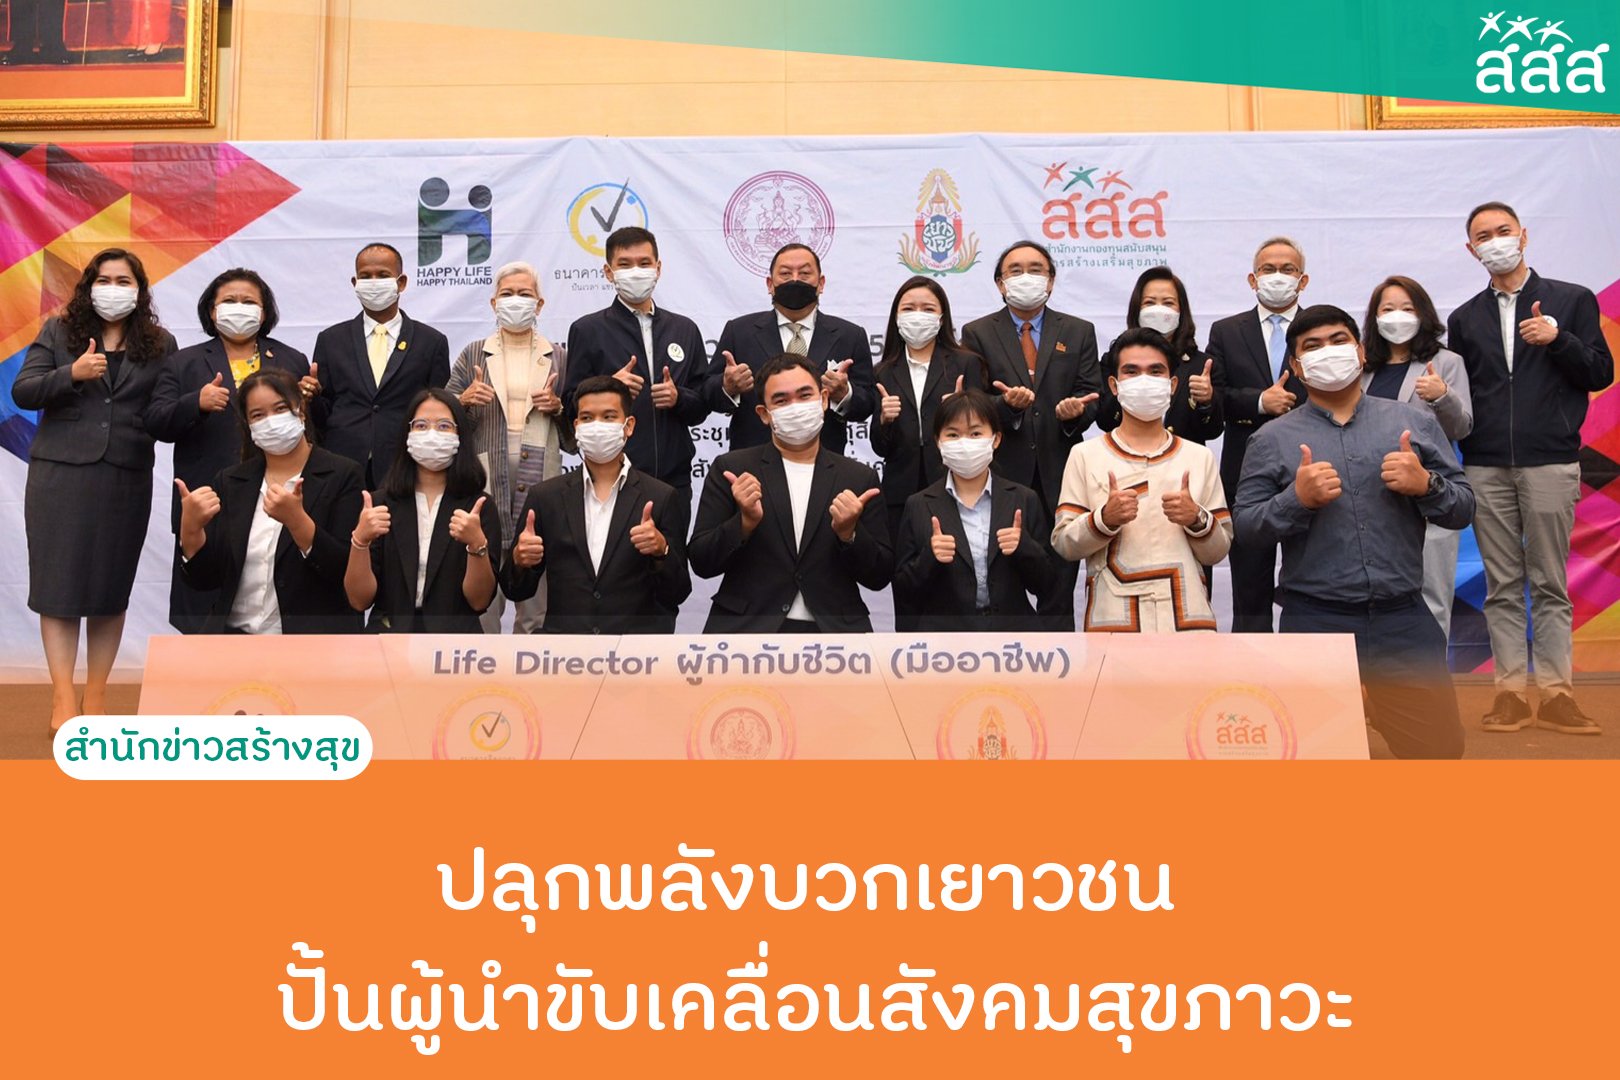 ปลุกพลังบวกเยาวชน ปั้นผู้นำขับเคลื่อนสังคมสุขภาวะ thaihealth